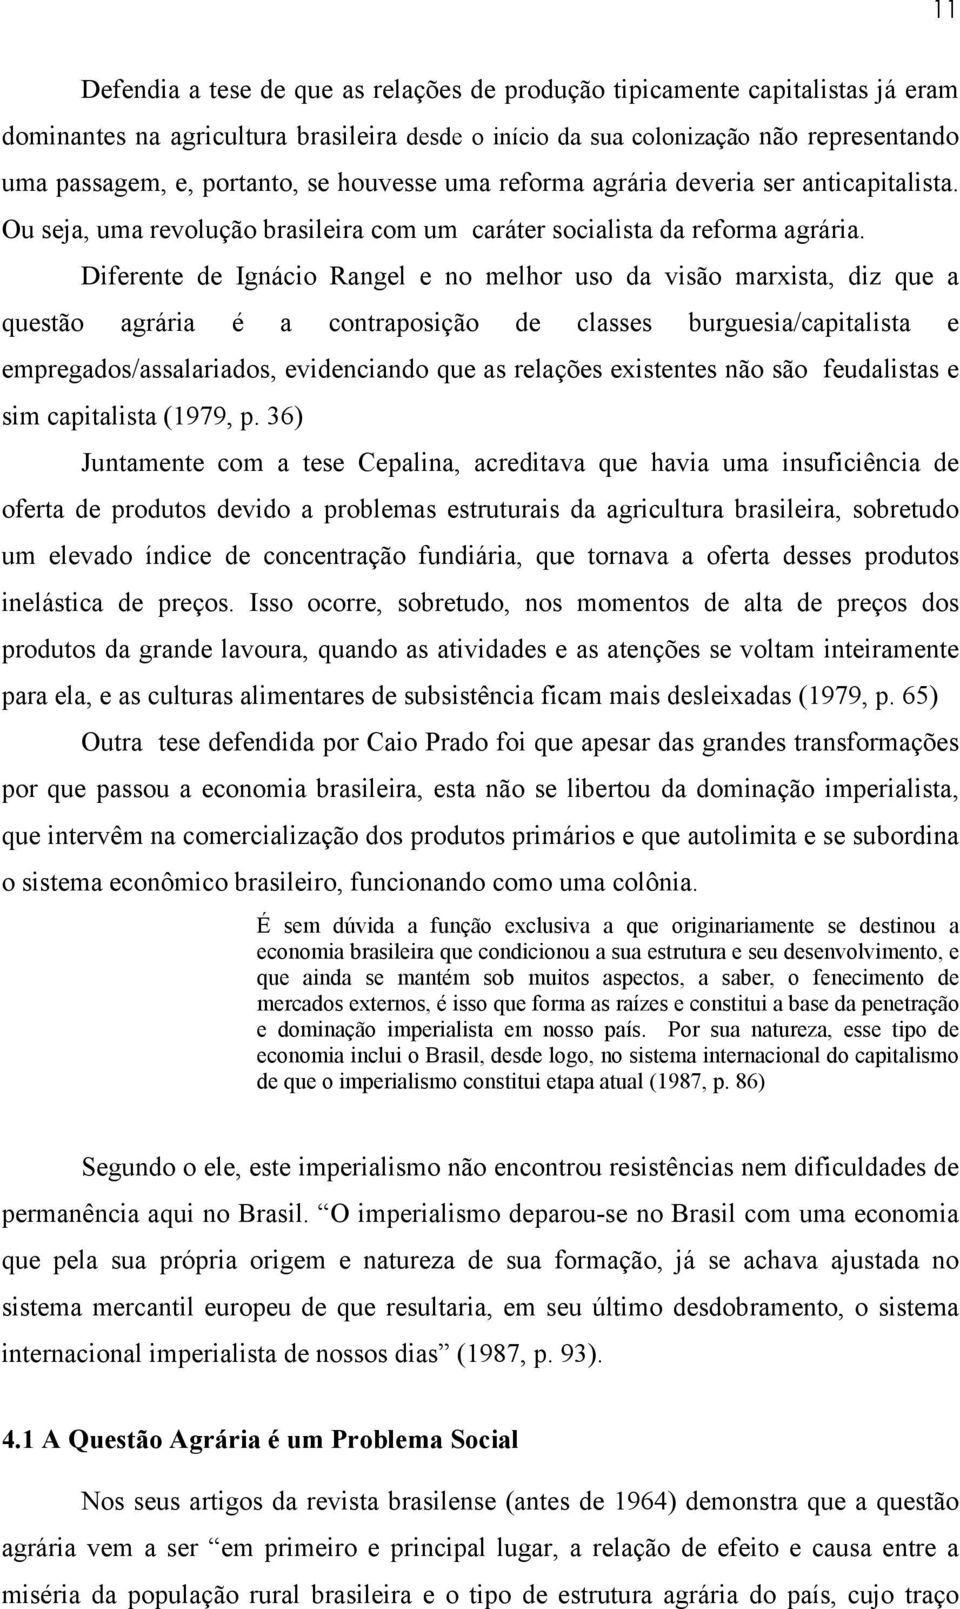 Diferente de Ignácio Rangel e no melhor uso da visão marxista, diz que a questão agrária é a contraposição de classes burguesia/capitalista e empregados/assalariados, evidenciando que as relações